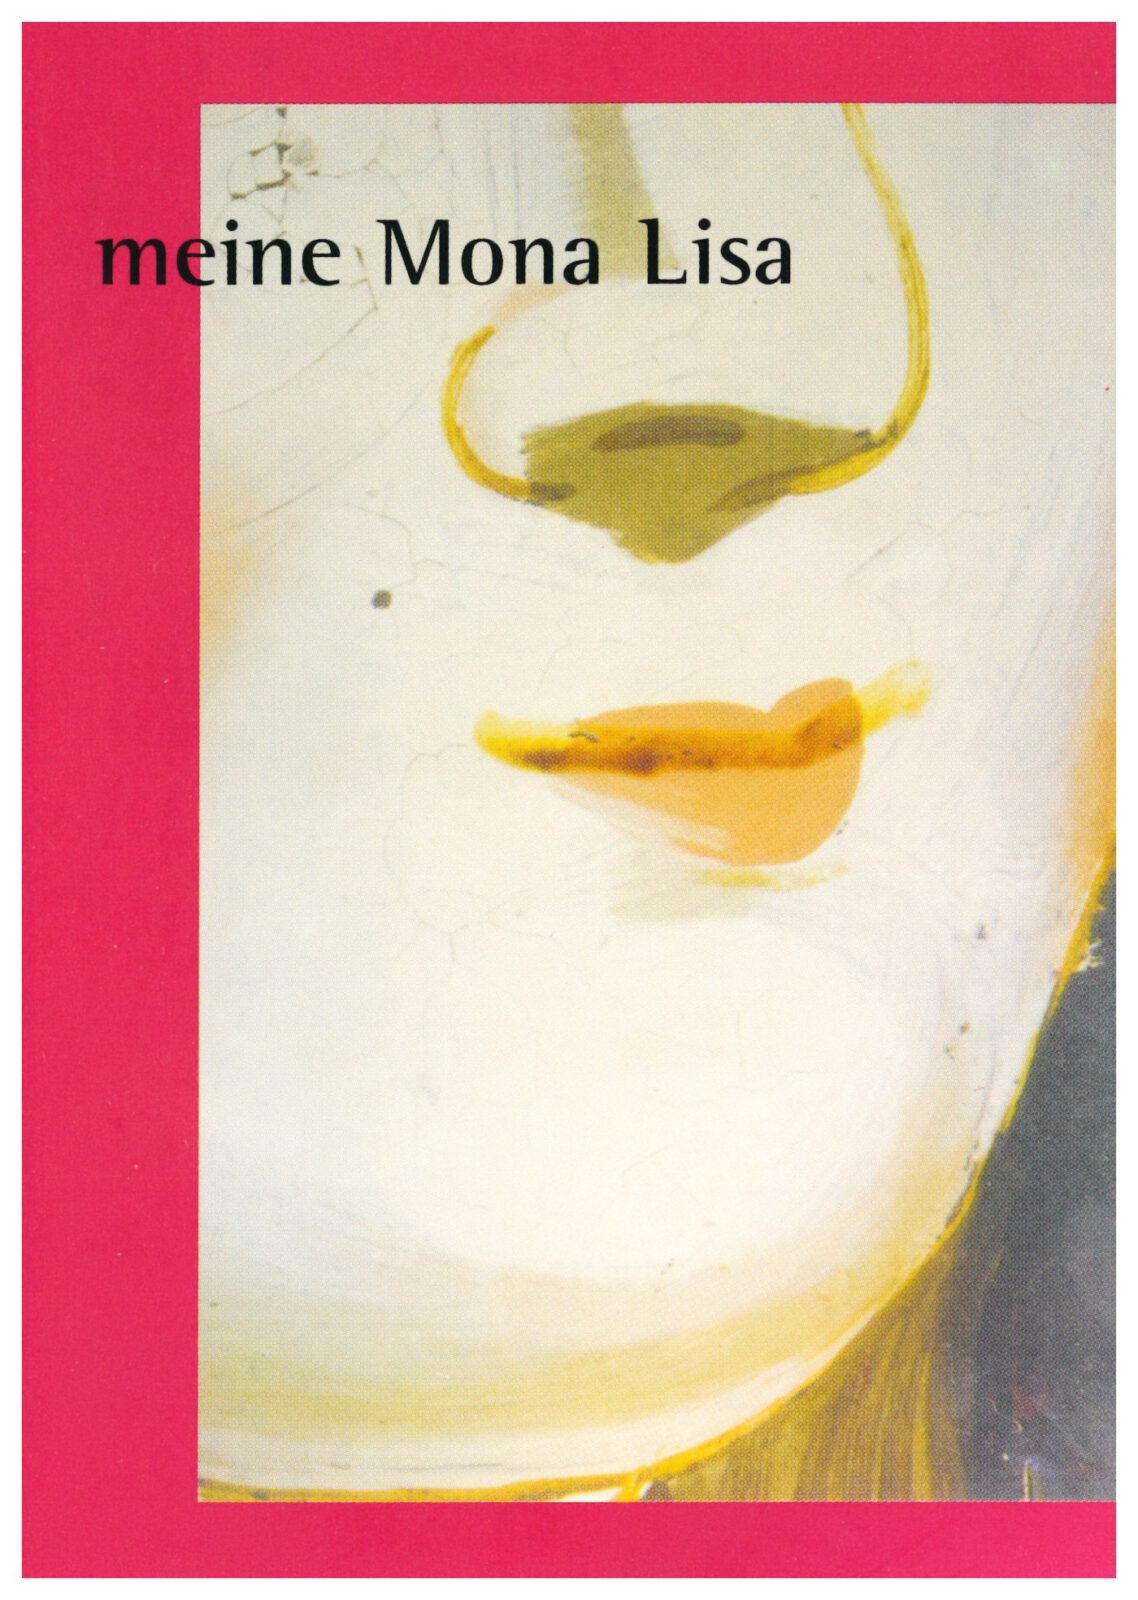 Einladungskarte für die Sonderausstellung Meine Mona Lisa, 2005. Zeichnung eines Frauengesichtes.